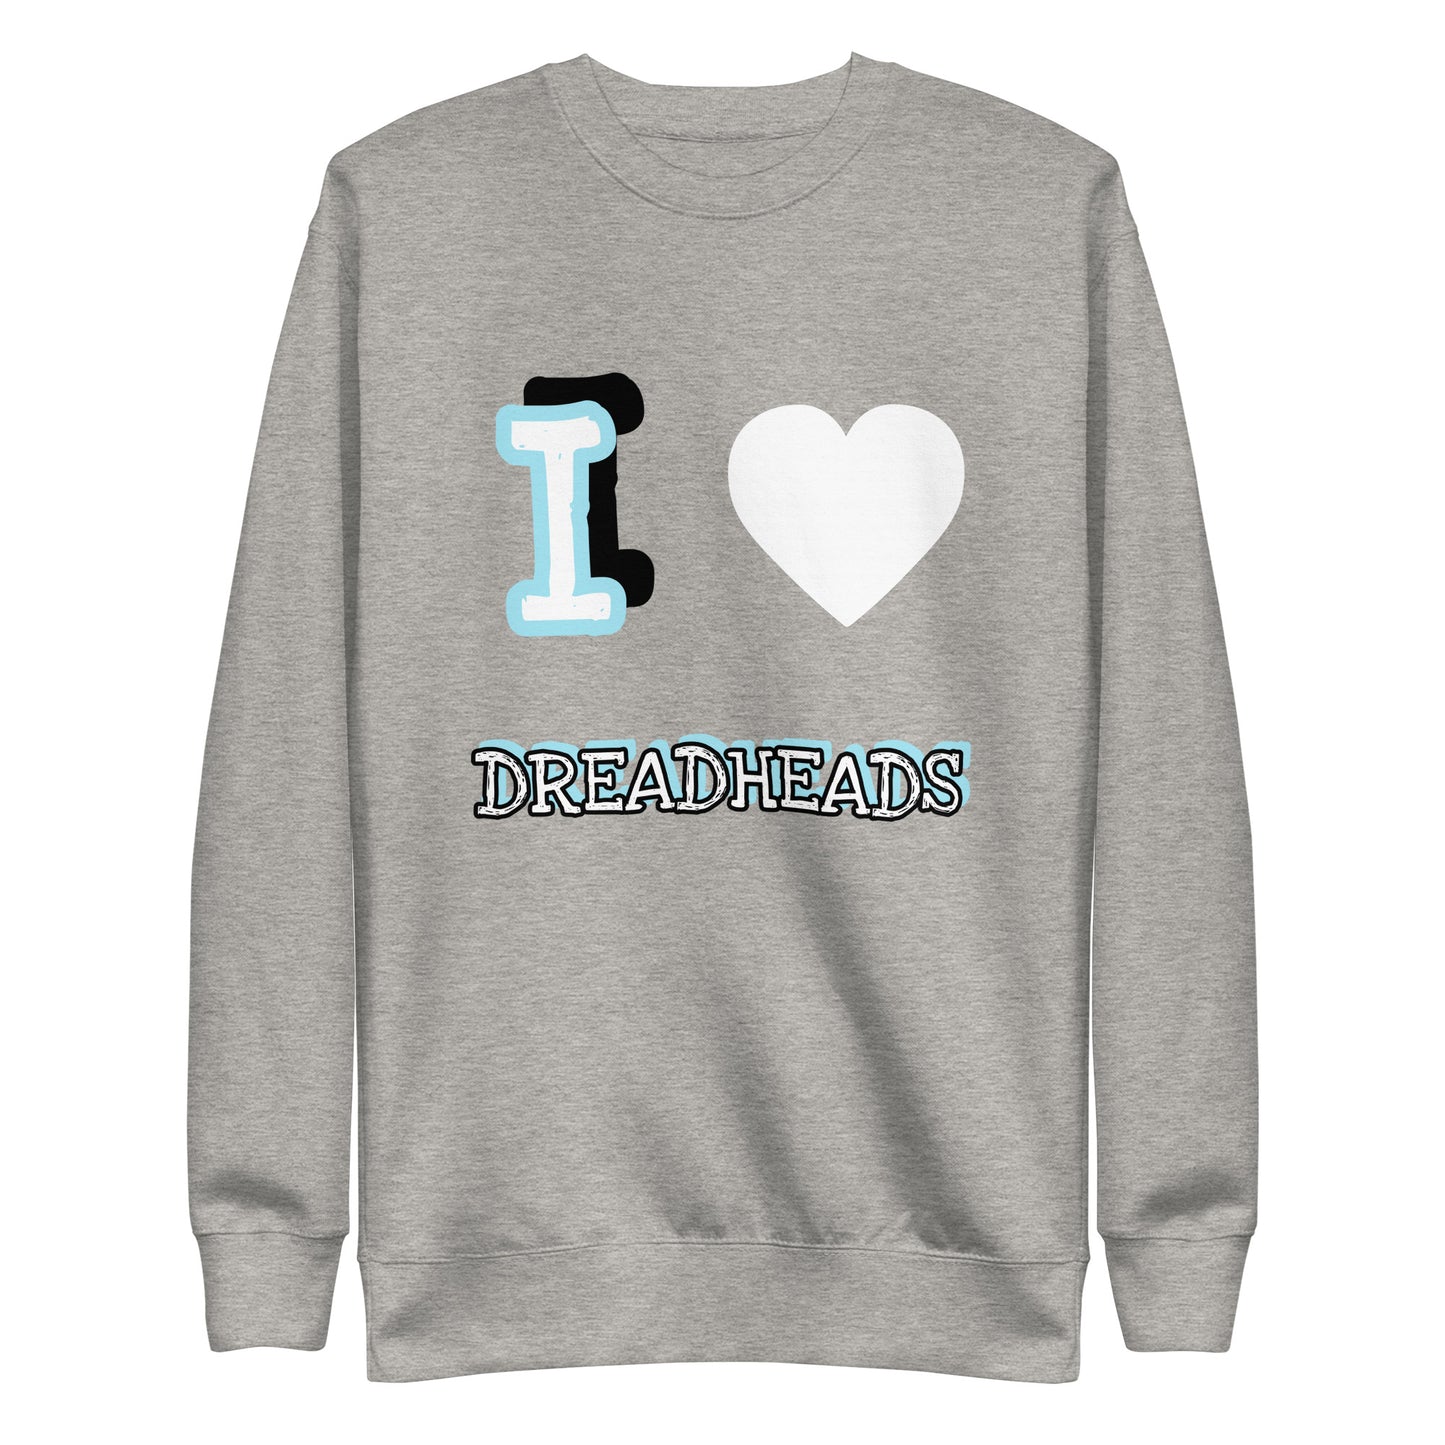 IHeartDreadHeads Premium Sweatshirt